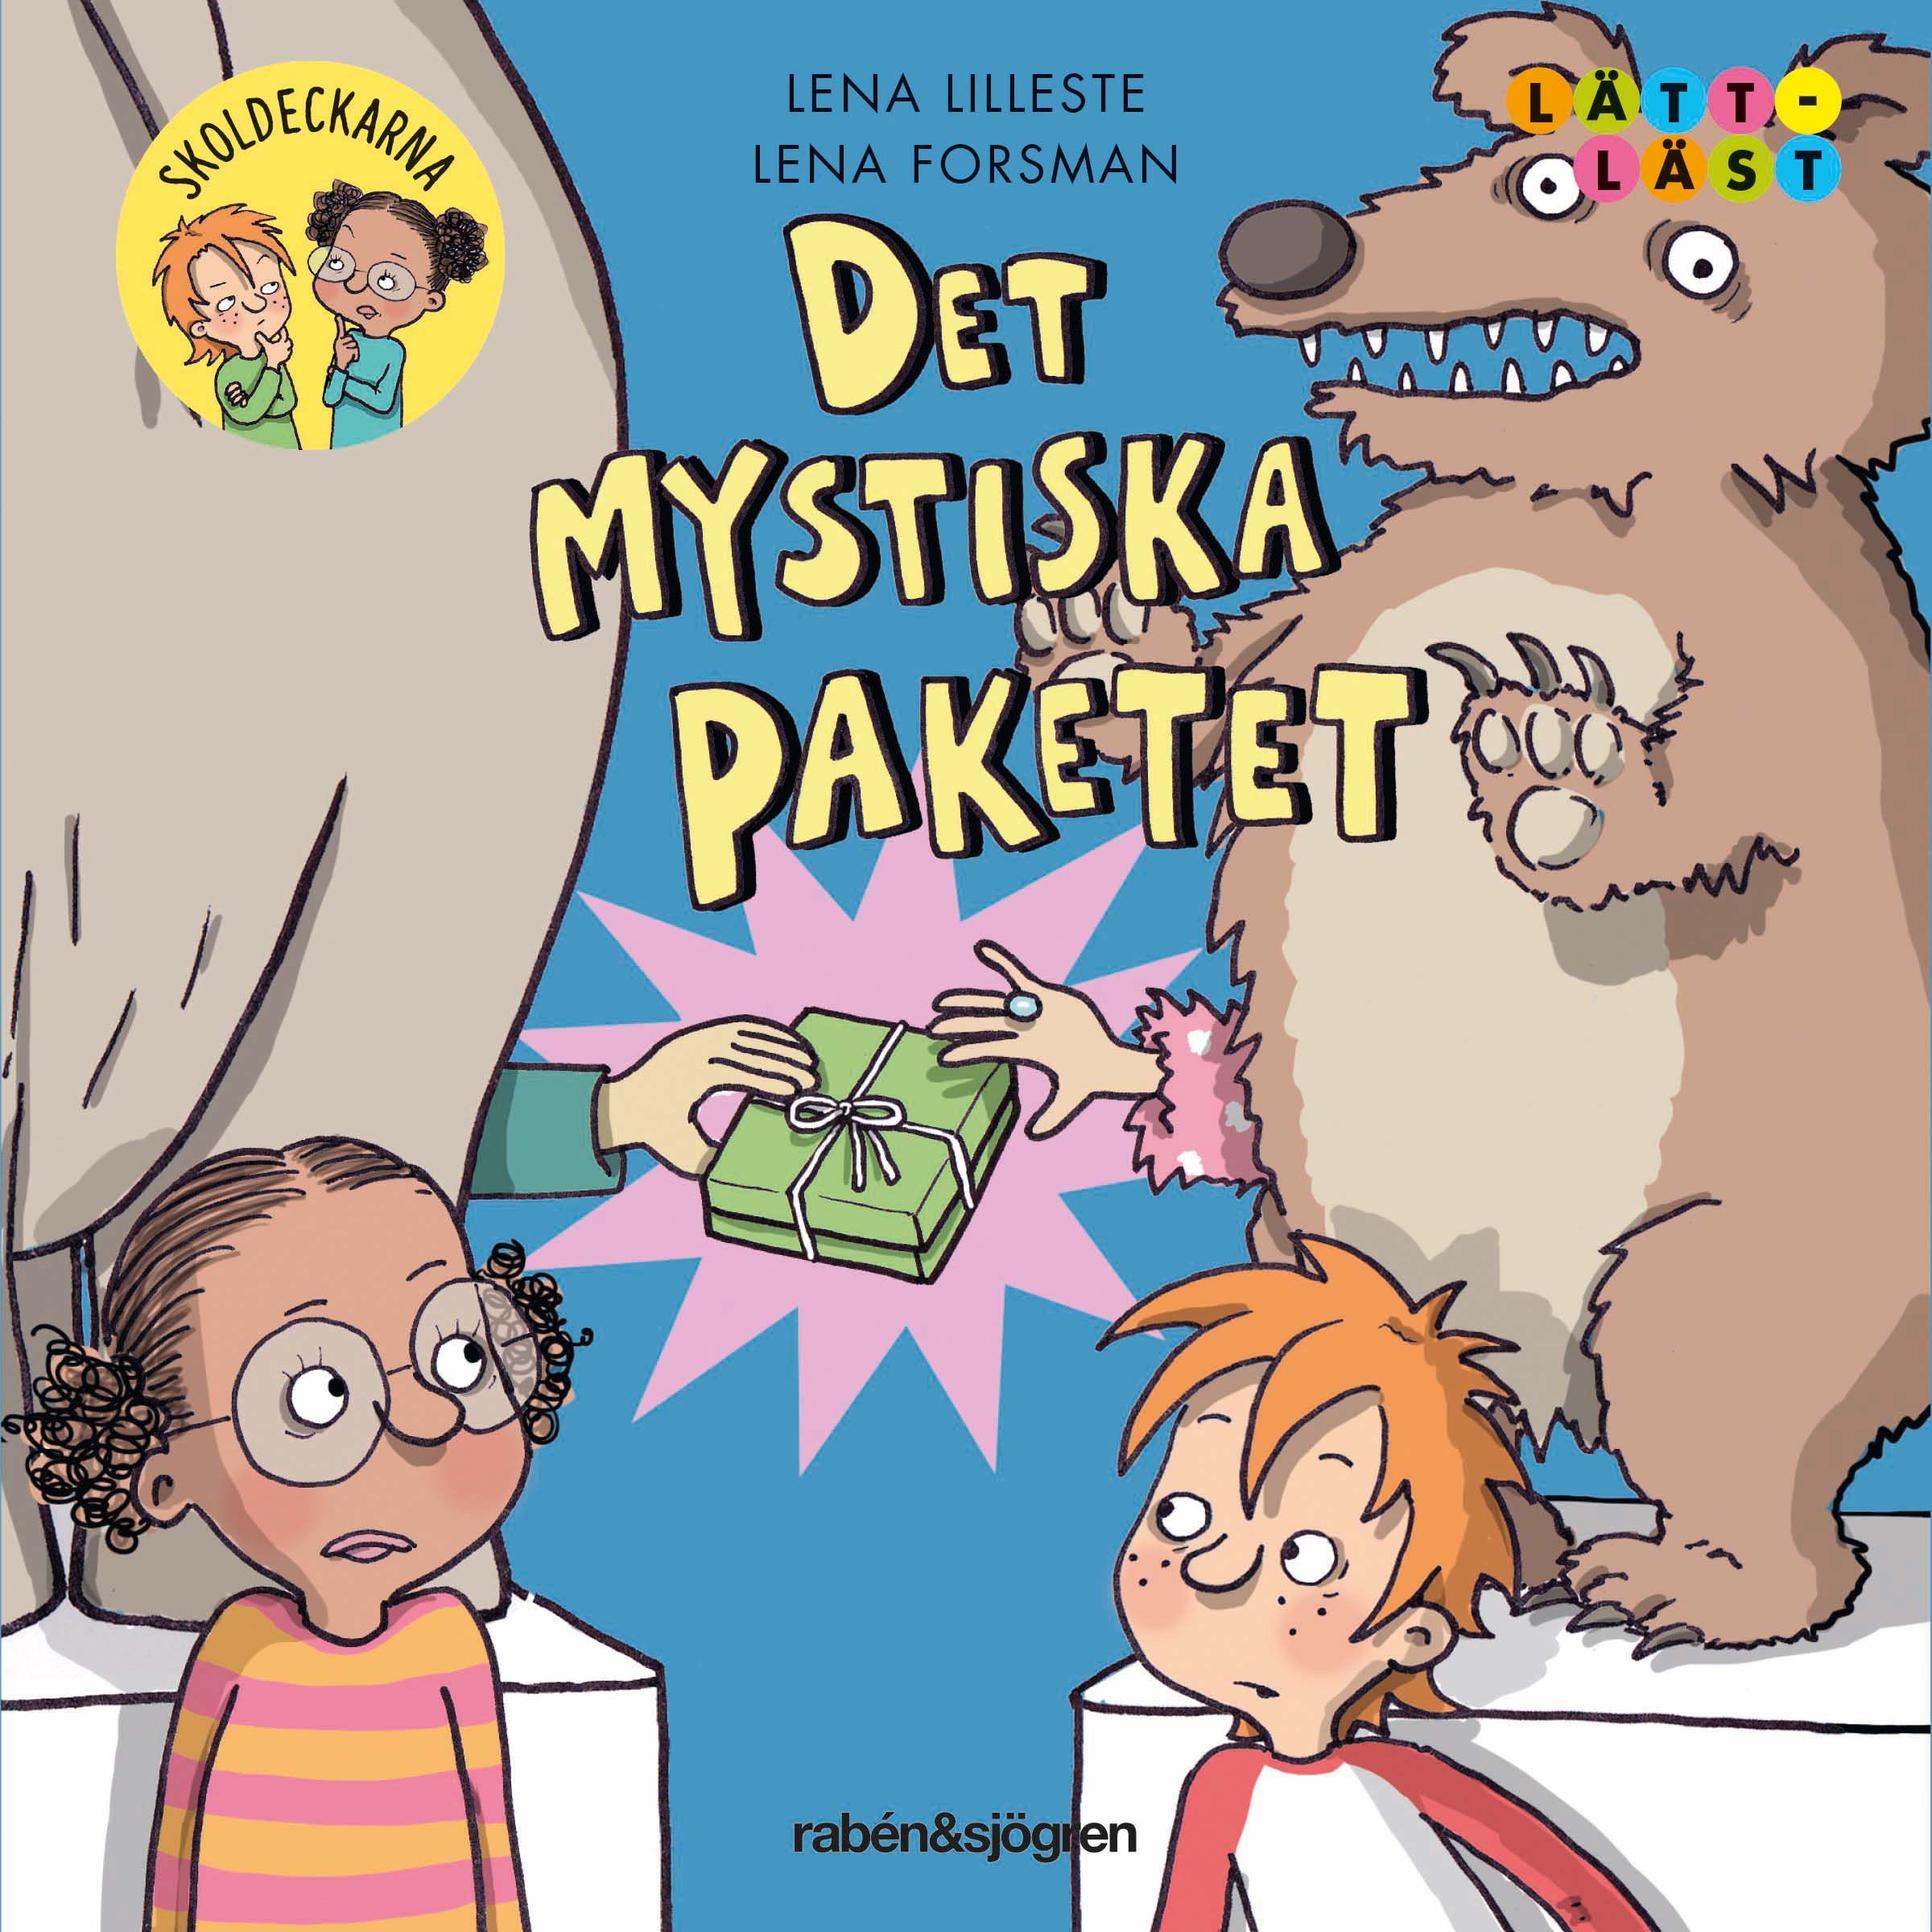 Det mystiska paketet, audiobook by Lena Lilleste